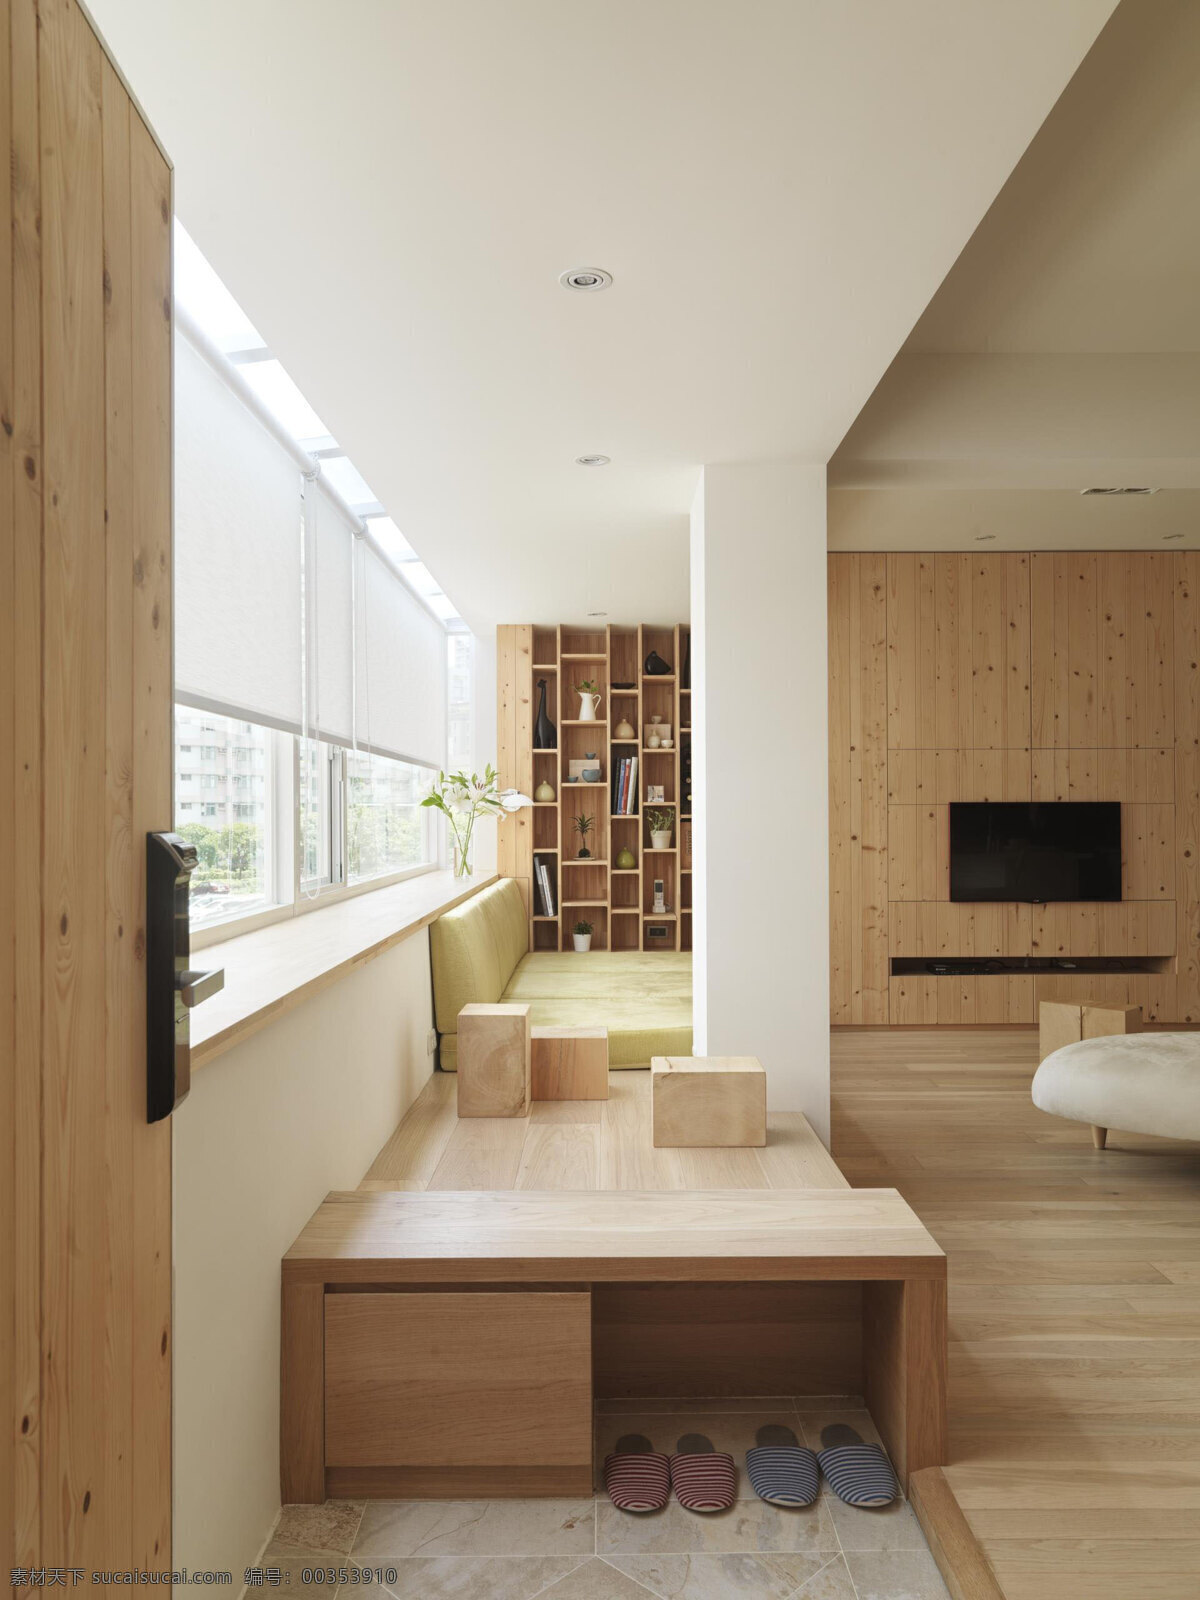 日式 客厅 木地板 室内装修 效果图 客厅装修 木制背景墙 木制电视柜